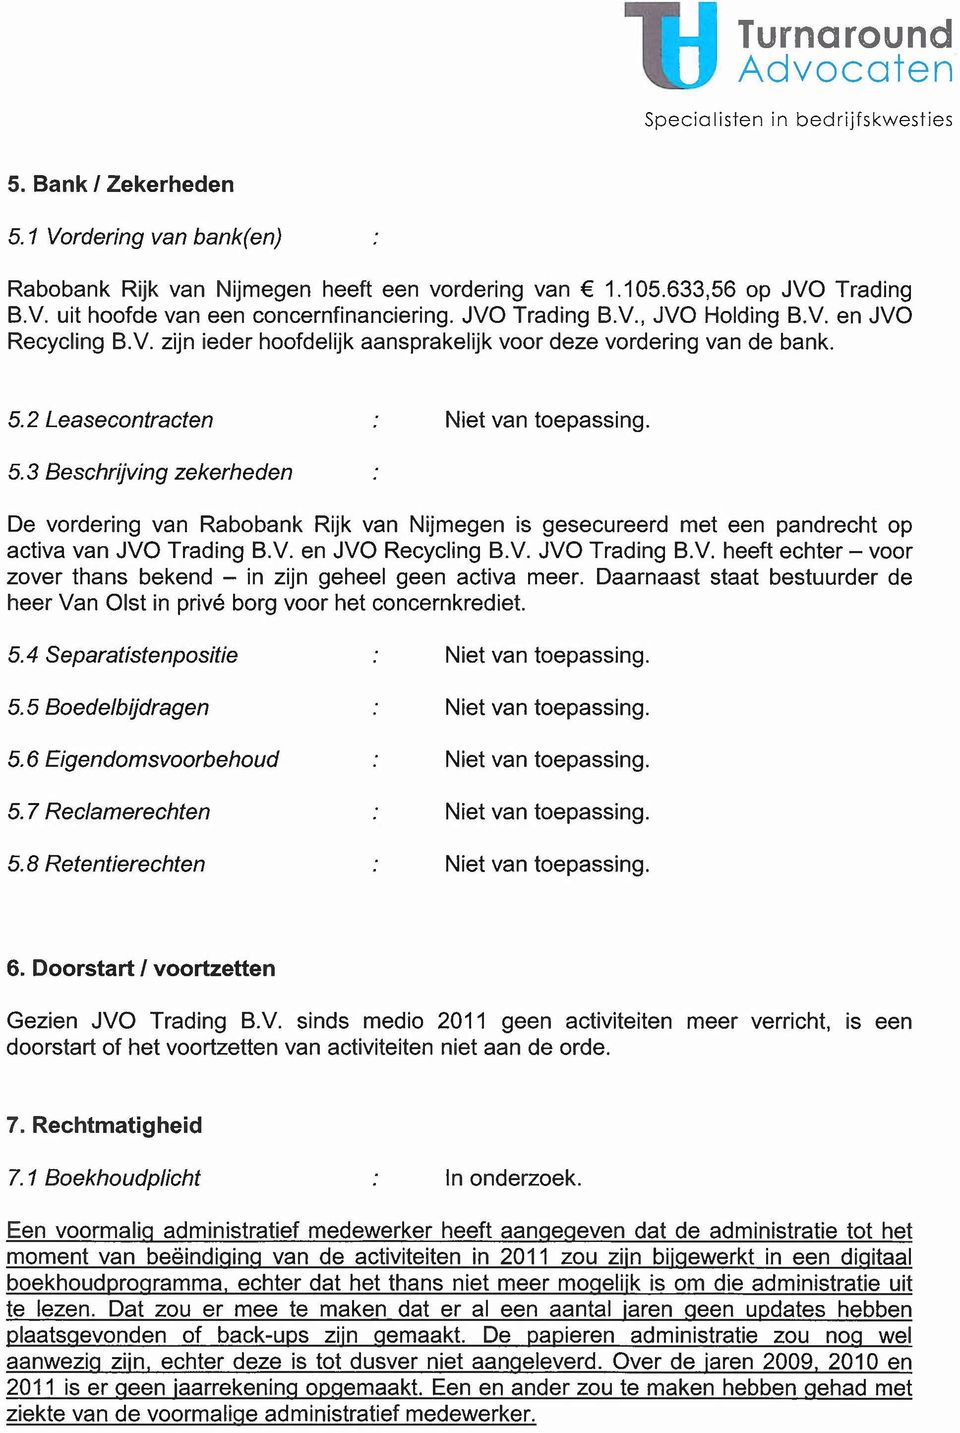 2 Leasecontracten Niet van toepassing. 5.3 Beschrijving zekerheden De vordering van Rabobank Rijk van Nijmegen is gesecureerd met een pandrecht op activa van JVO Trading B.V. en JVO Recycling B.V. JVO Trading B.v. heeft echter - voor zover thans bekend - in zijn geheel geen activa meer.